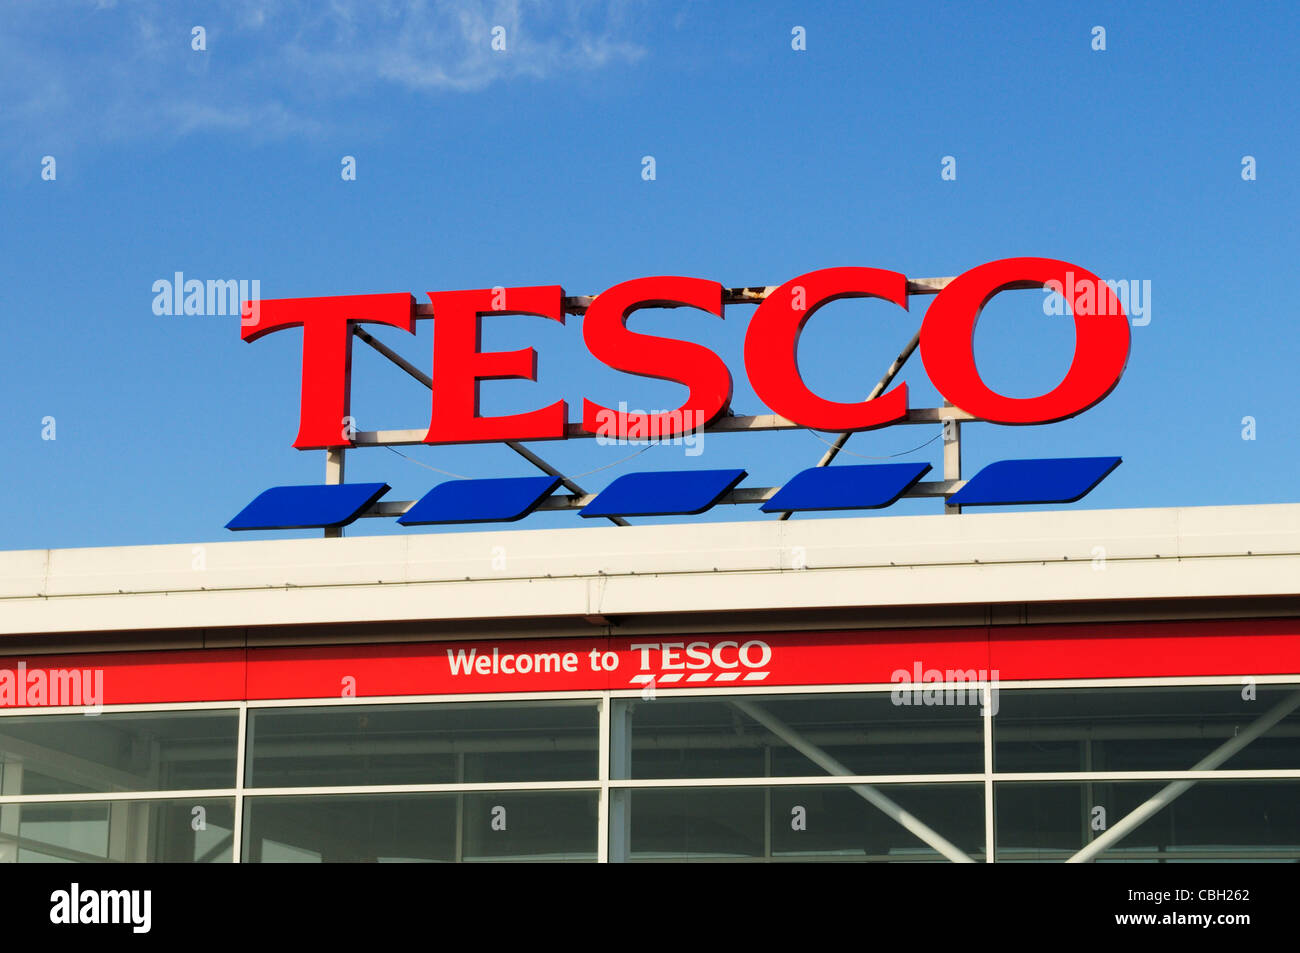 Tesco Supermarket Sign, Cambridge, England, UK Stock Photo